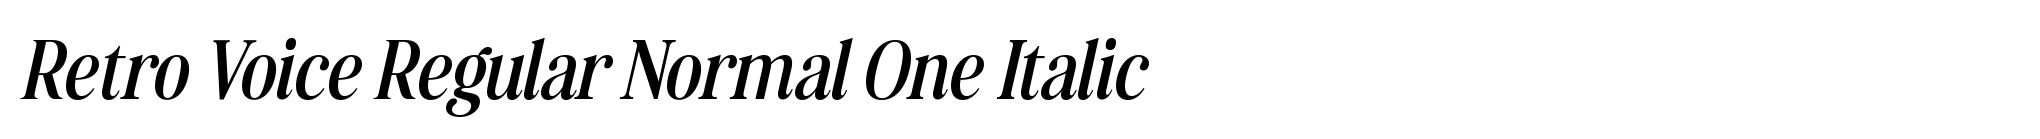 Retro Voice Regular Normal One Italic image